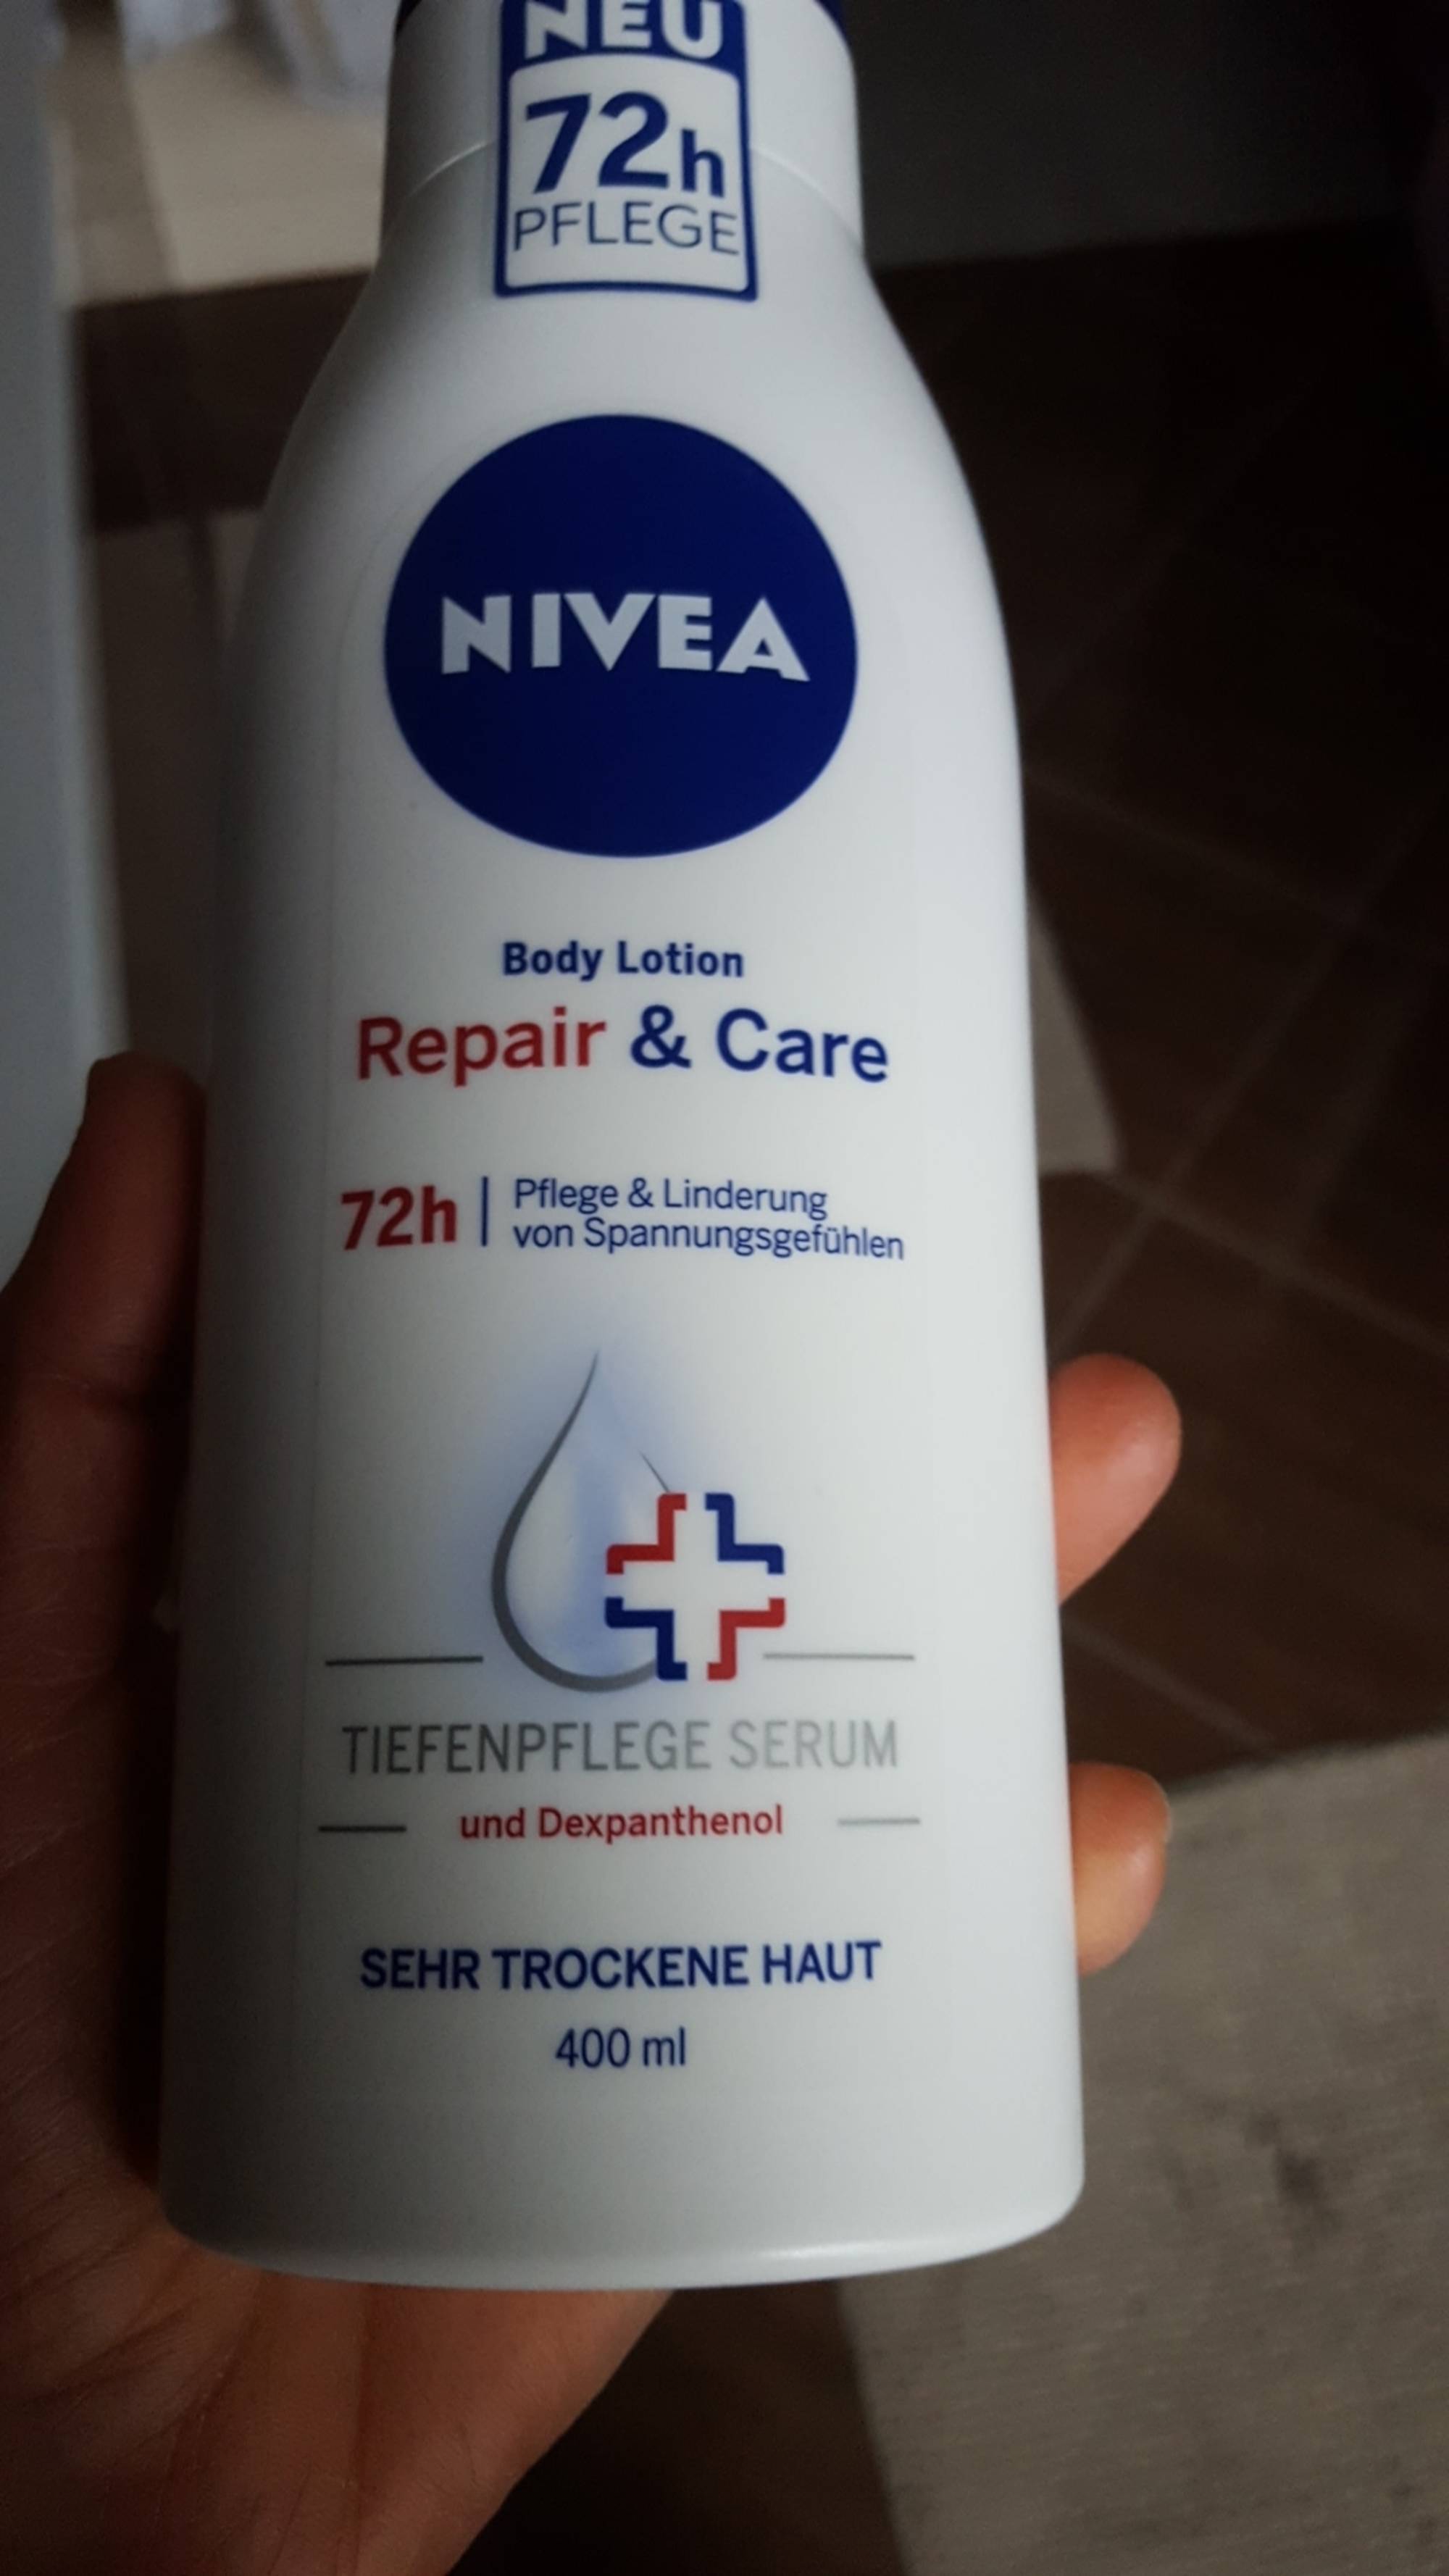 NIVEA - Body lotion repair & care 72h